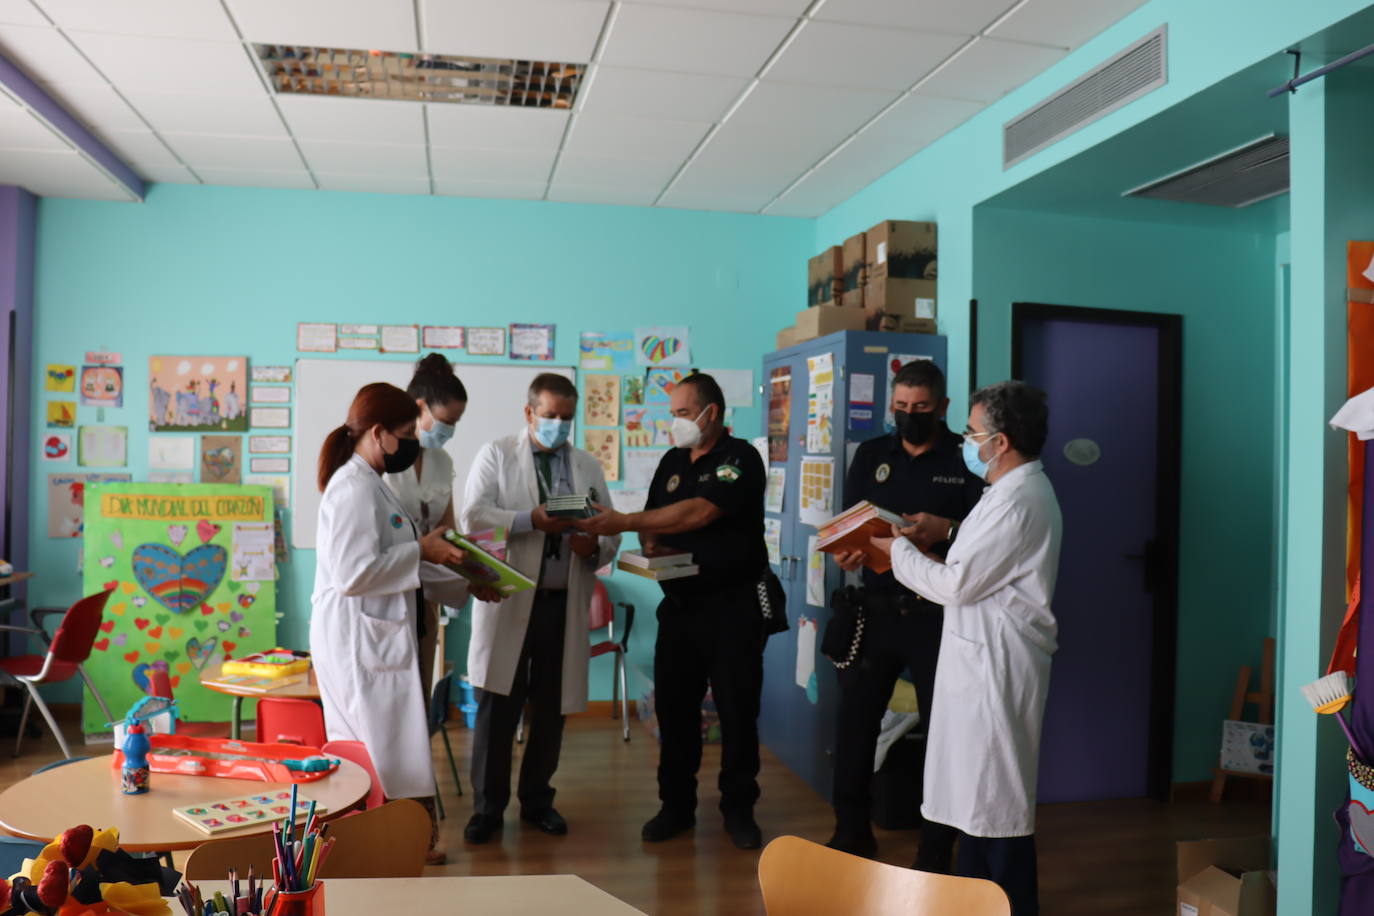 La educación vial llega a los niños hospitalizados gracias a la Policía Local de Adra